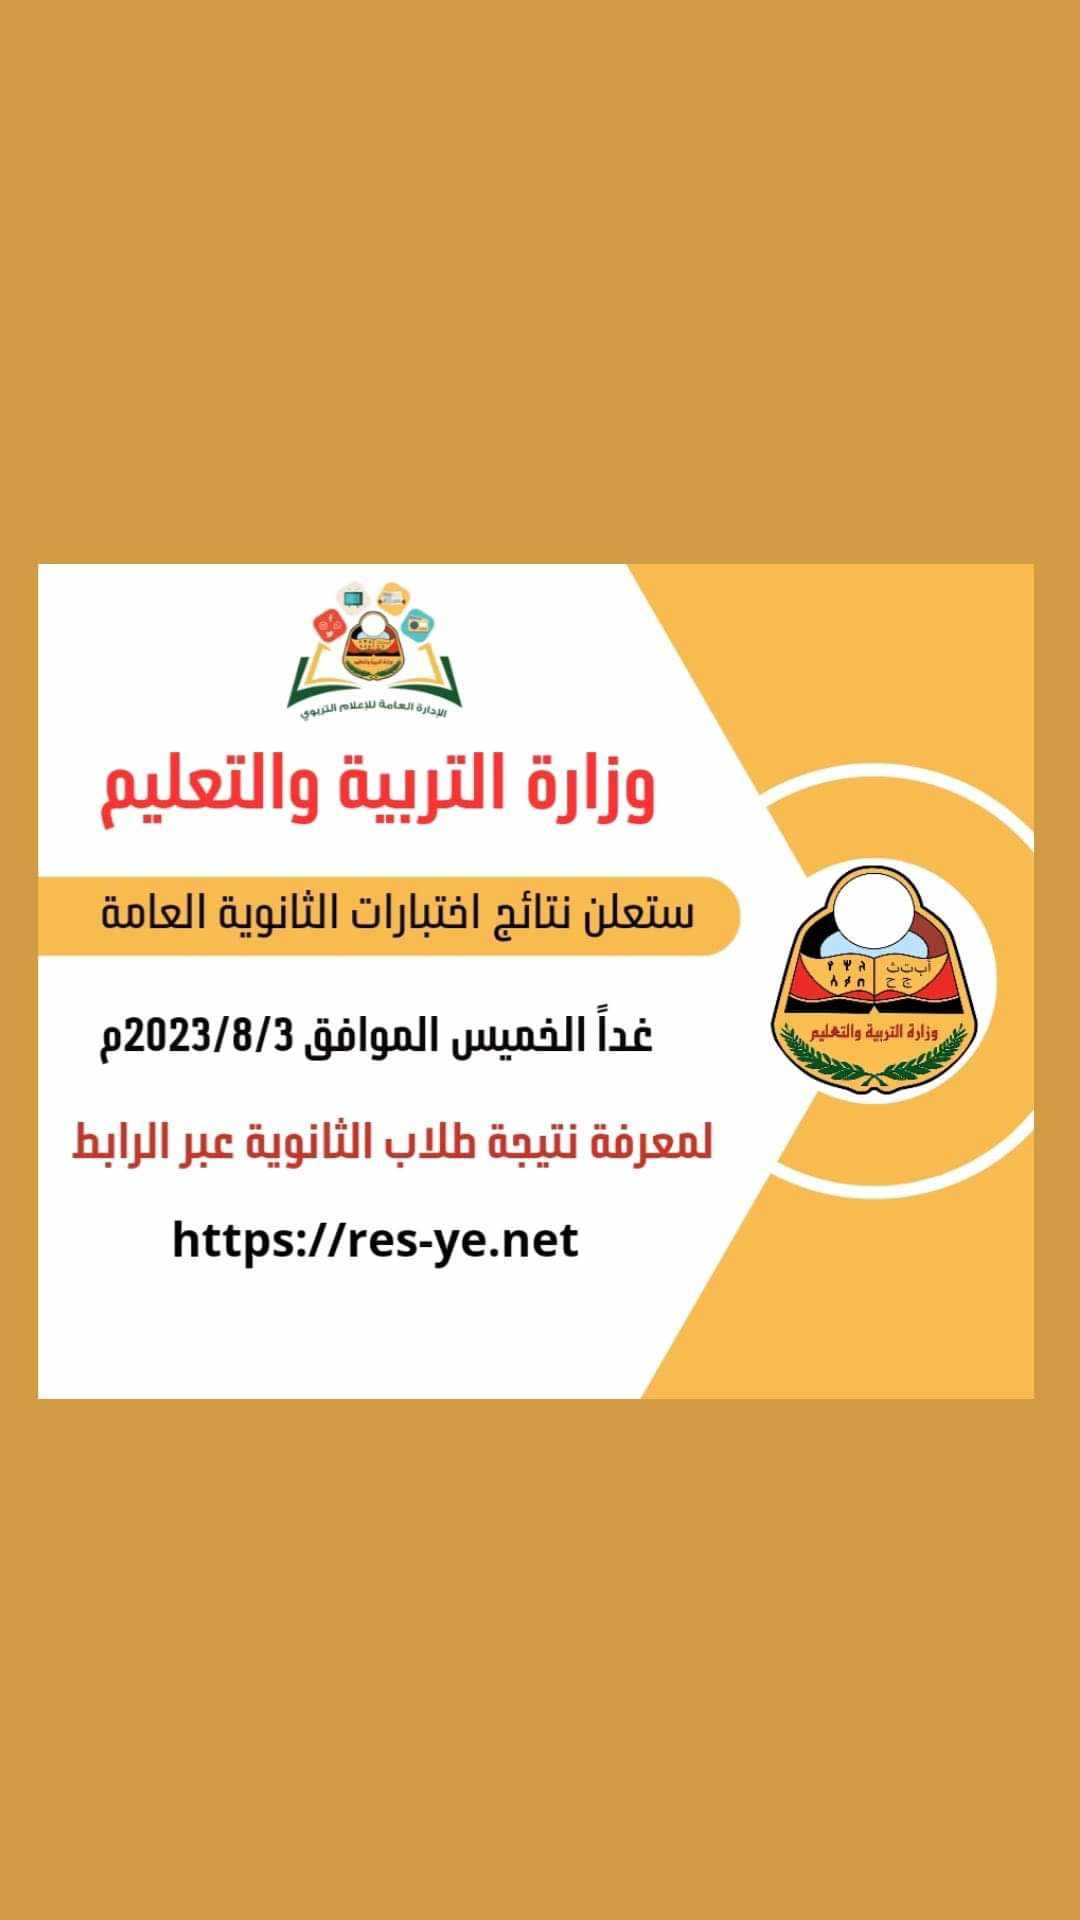 “عاجل” استخراج نتائج الثانوية العامة اليمن 2023 برقم الجلوس عبر moe-ye.net